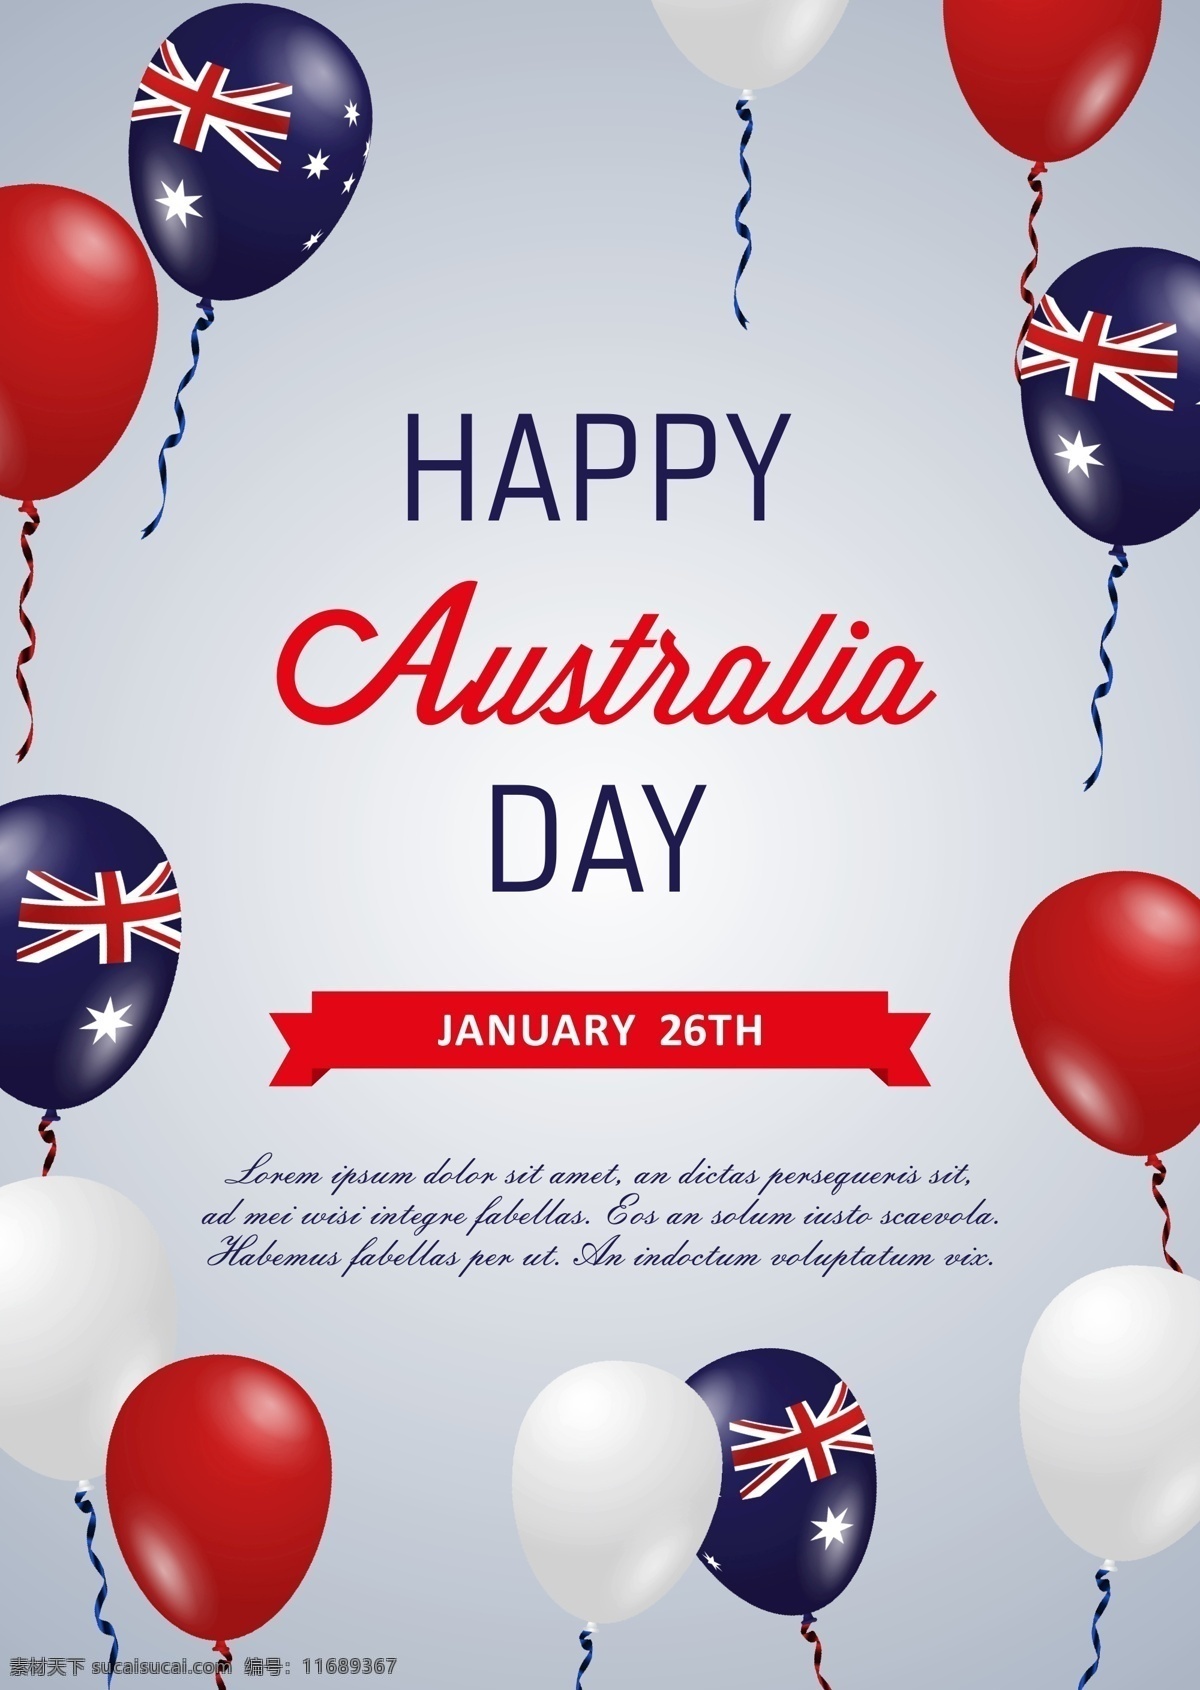 白色 快乐 气球 澳大利亚 日 海报 庆祝 澳大利亚国旗 天 节